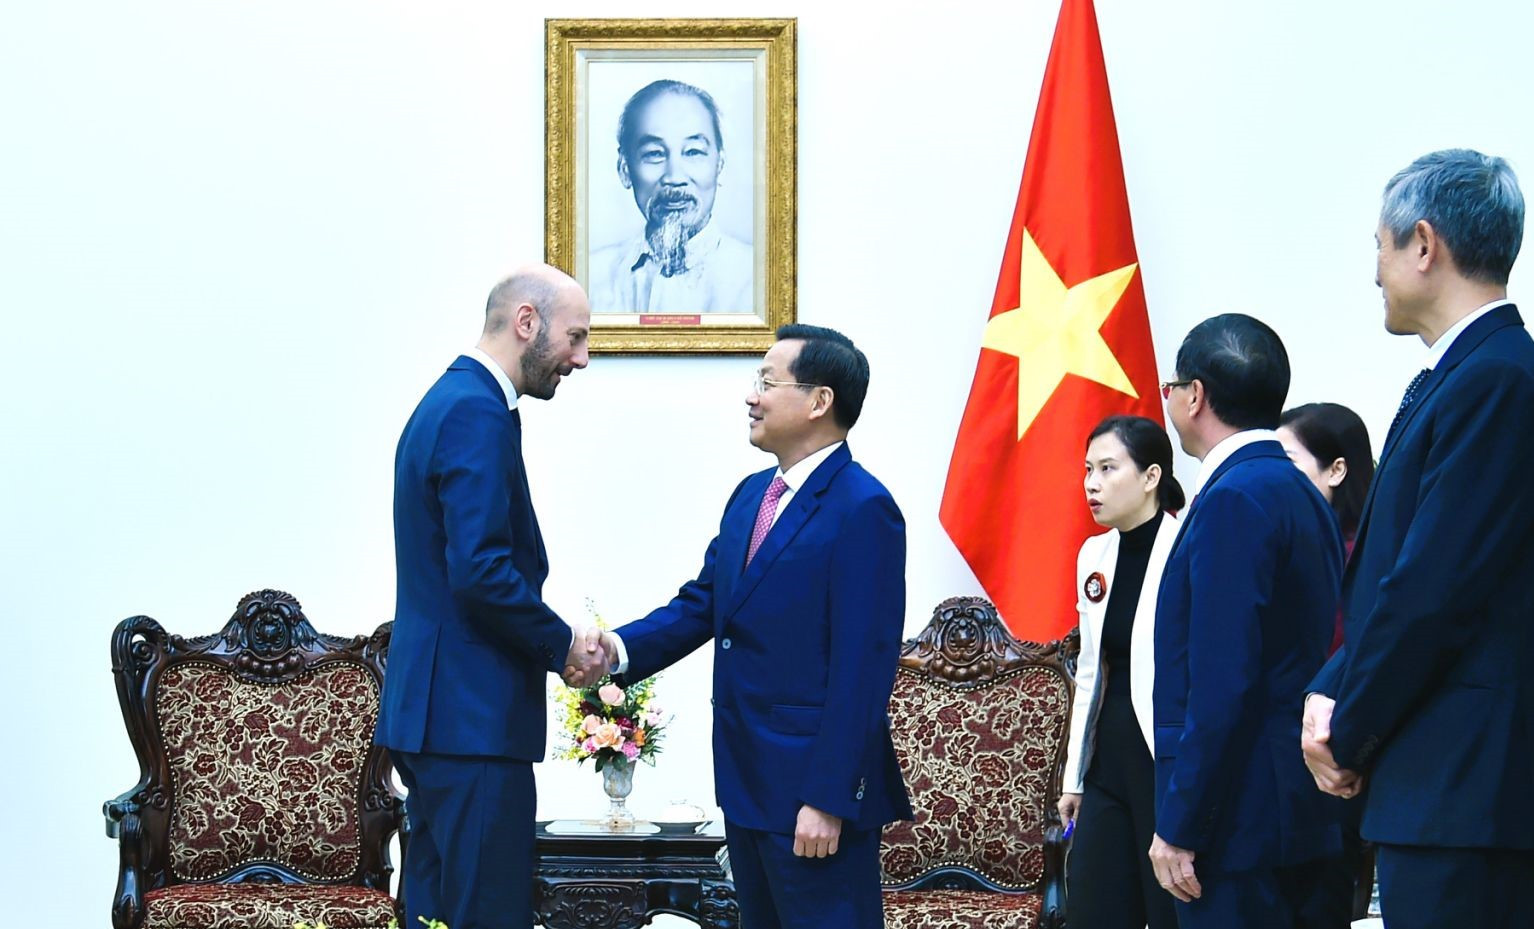 Phó Thủ tướng Lê Minh Khái: Thúc đẩy hợp tác Việt-Pháp, tăng cường trao đổi kinh nghiệm quản trị công, cải cách tiền lương, xây dựng nền công vụ liêm chính- Ảnh 1.